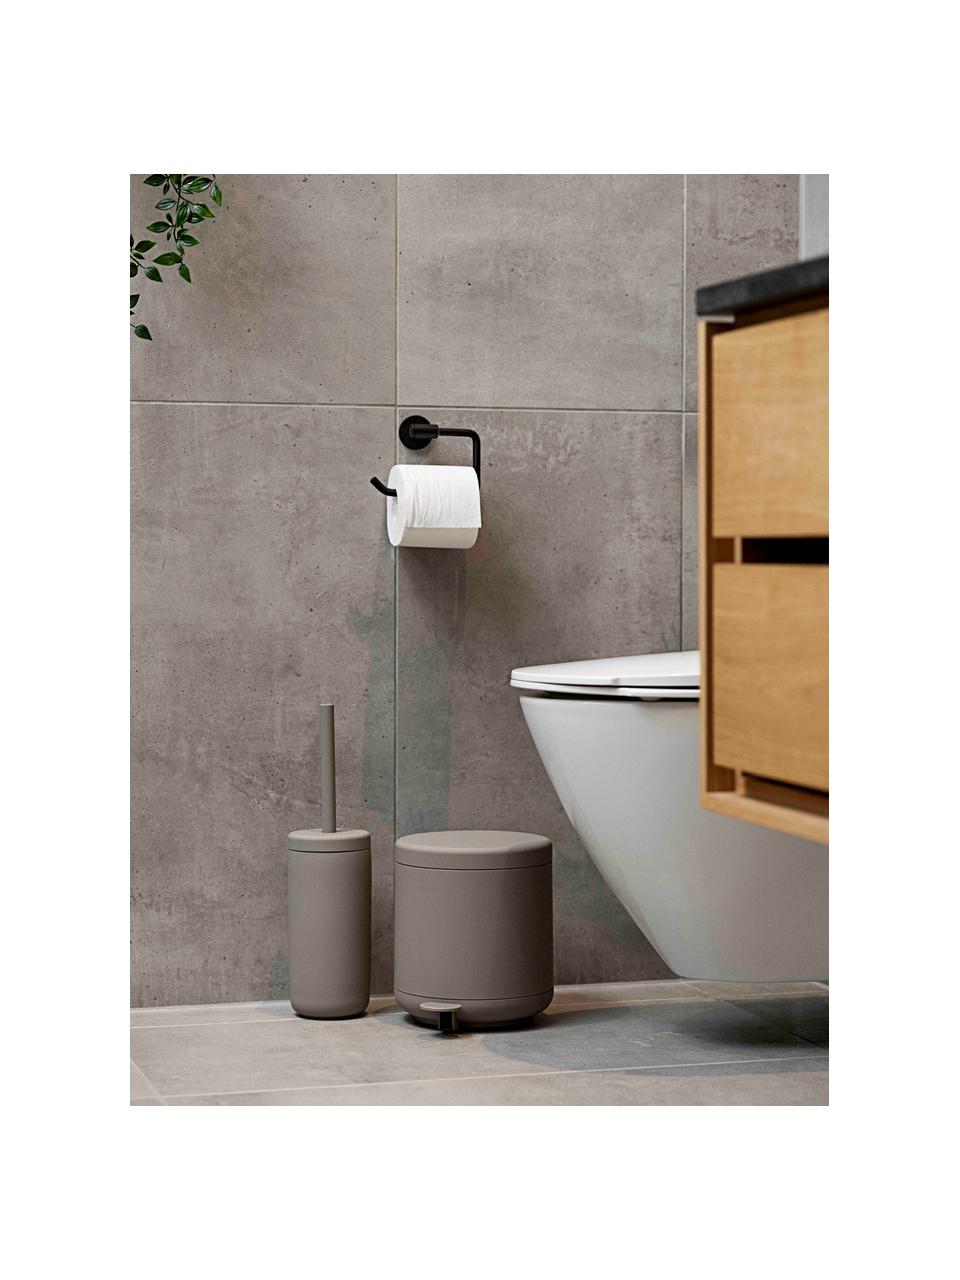 Toilettenbürste Ume mit Behälter, Behälter: Steingut überzogen mit So, Griff: Kunststoff, Taupe, Ø 10 x H 39 cm